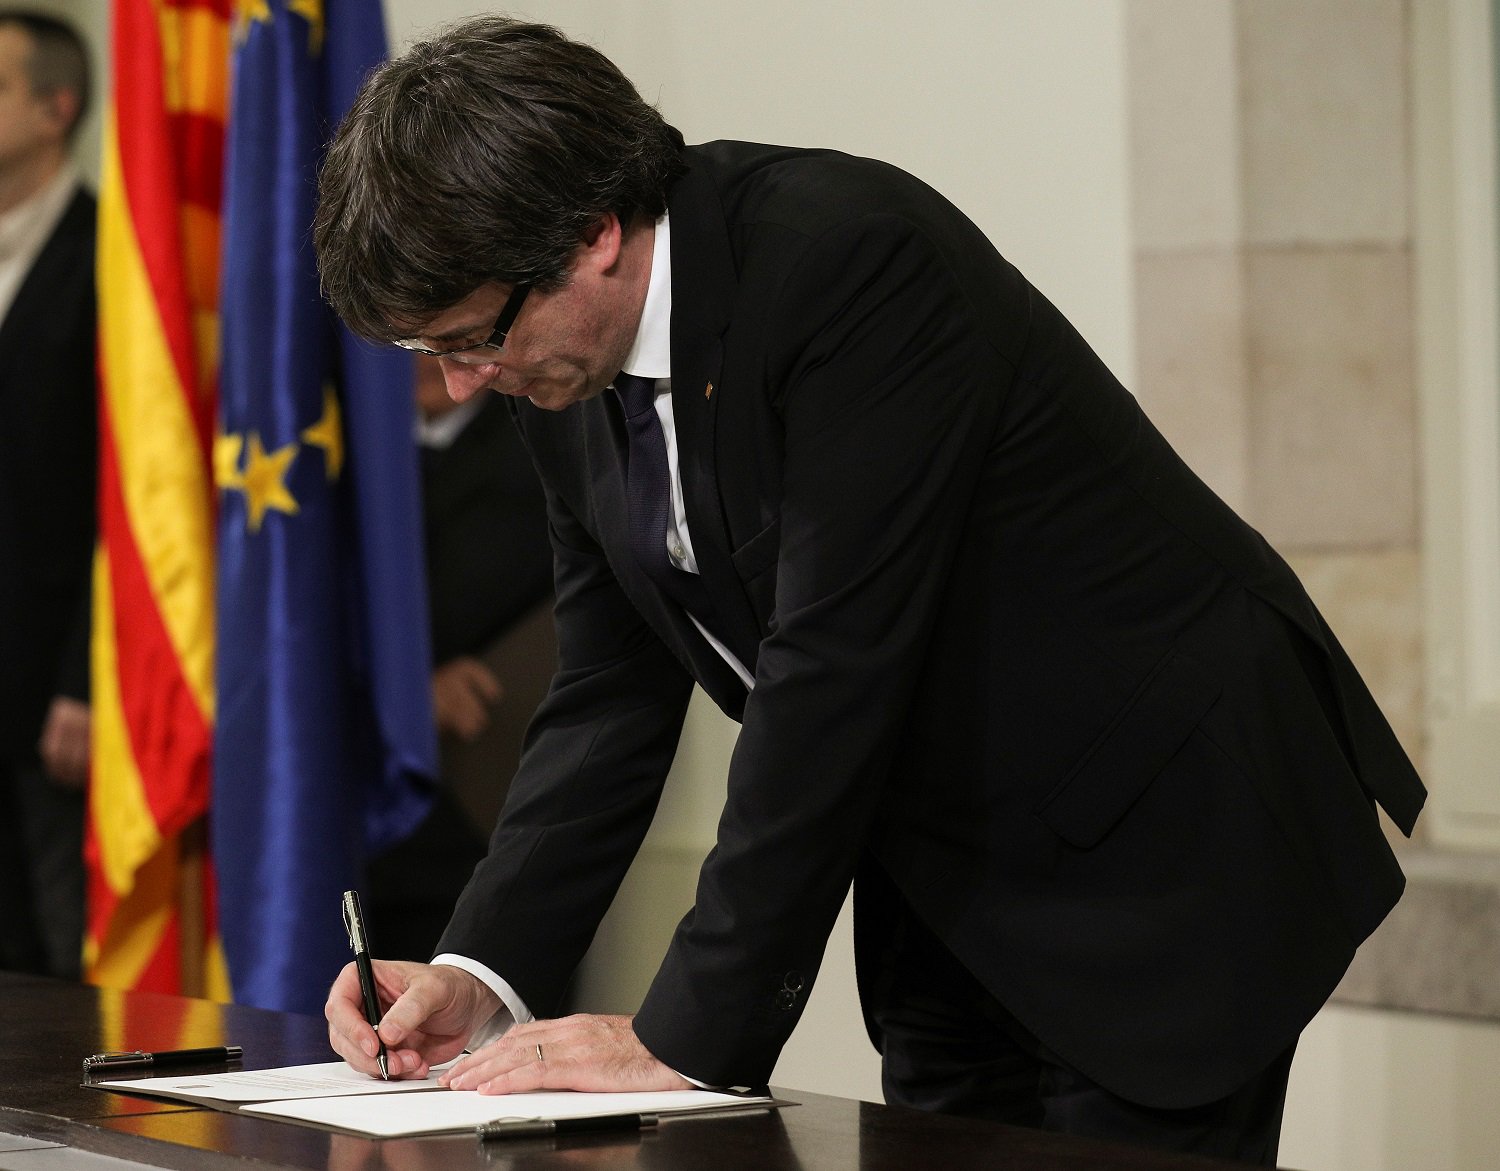 La firma de la declaración de independencia fue un acto simbólico, dice gobierno catalán